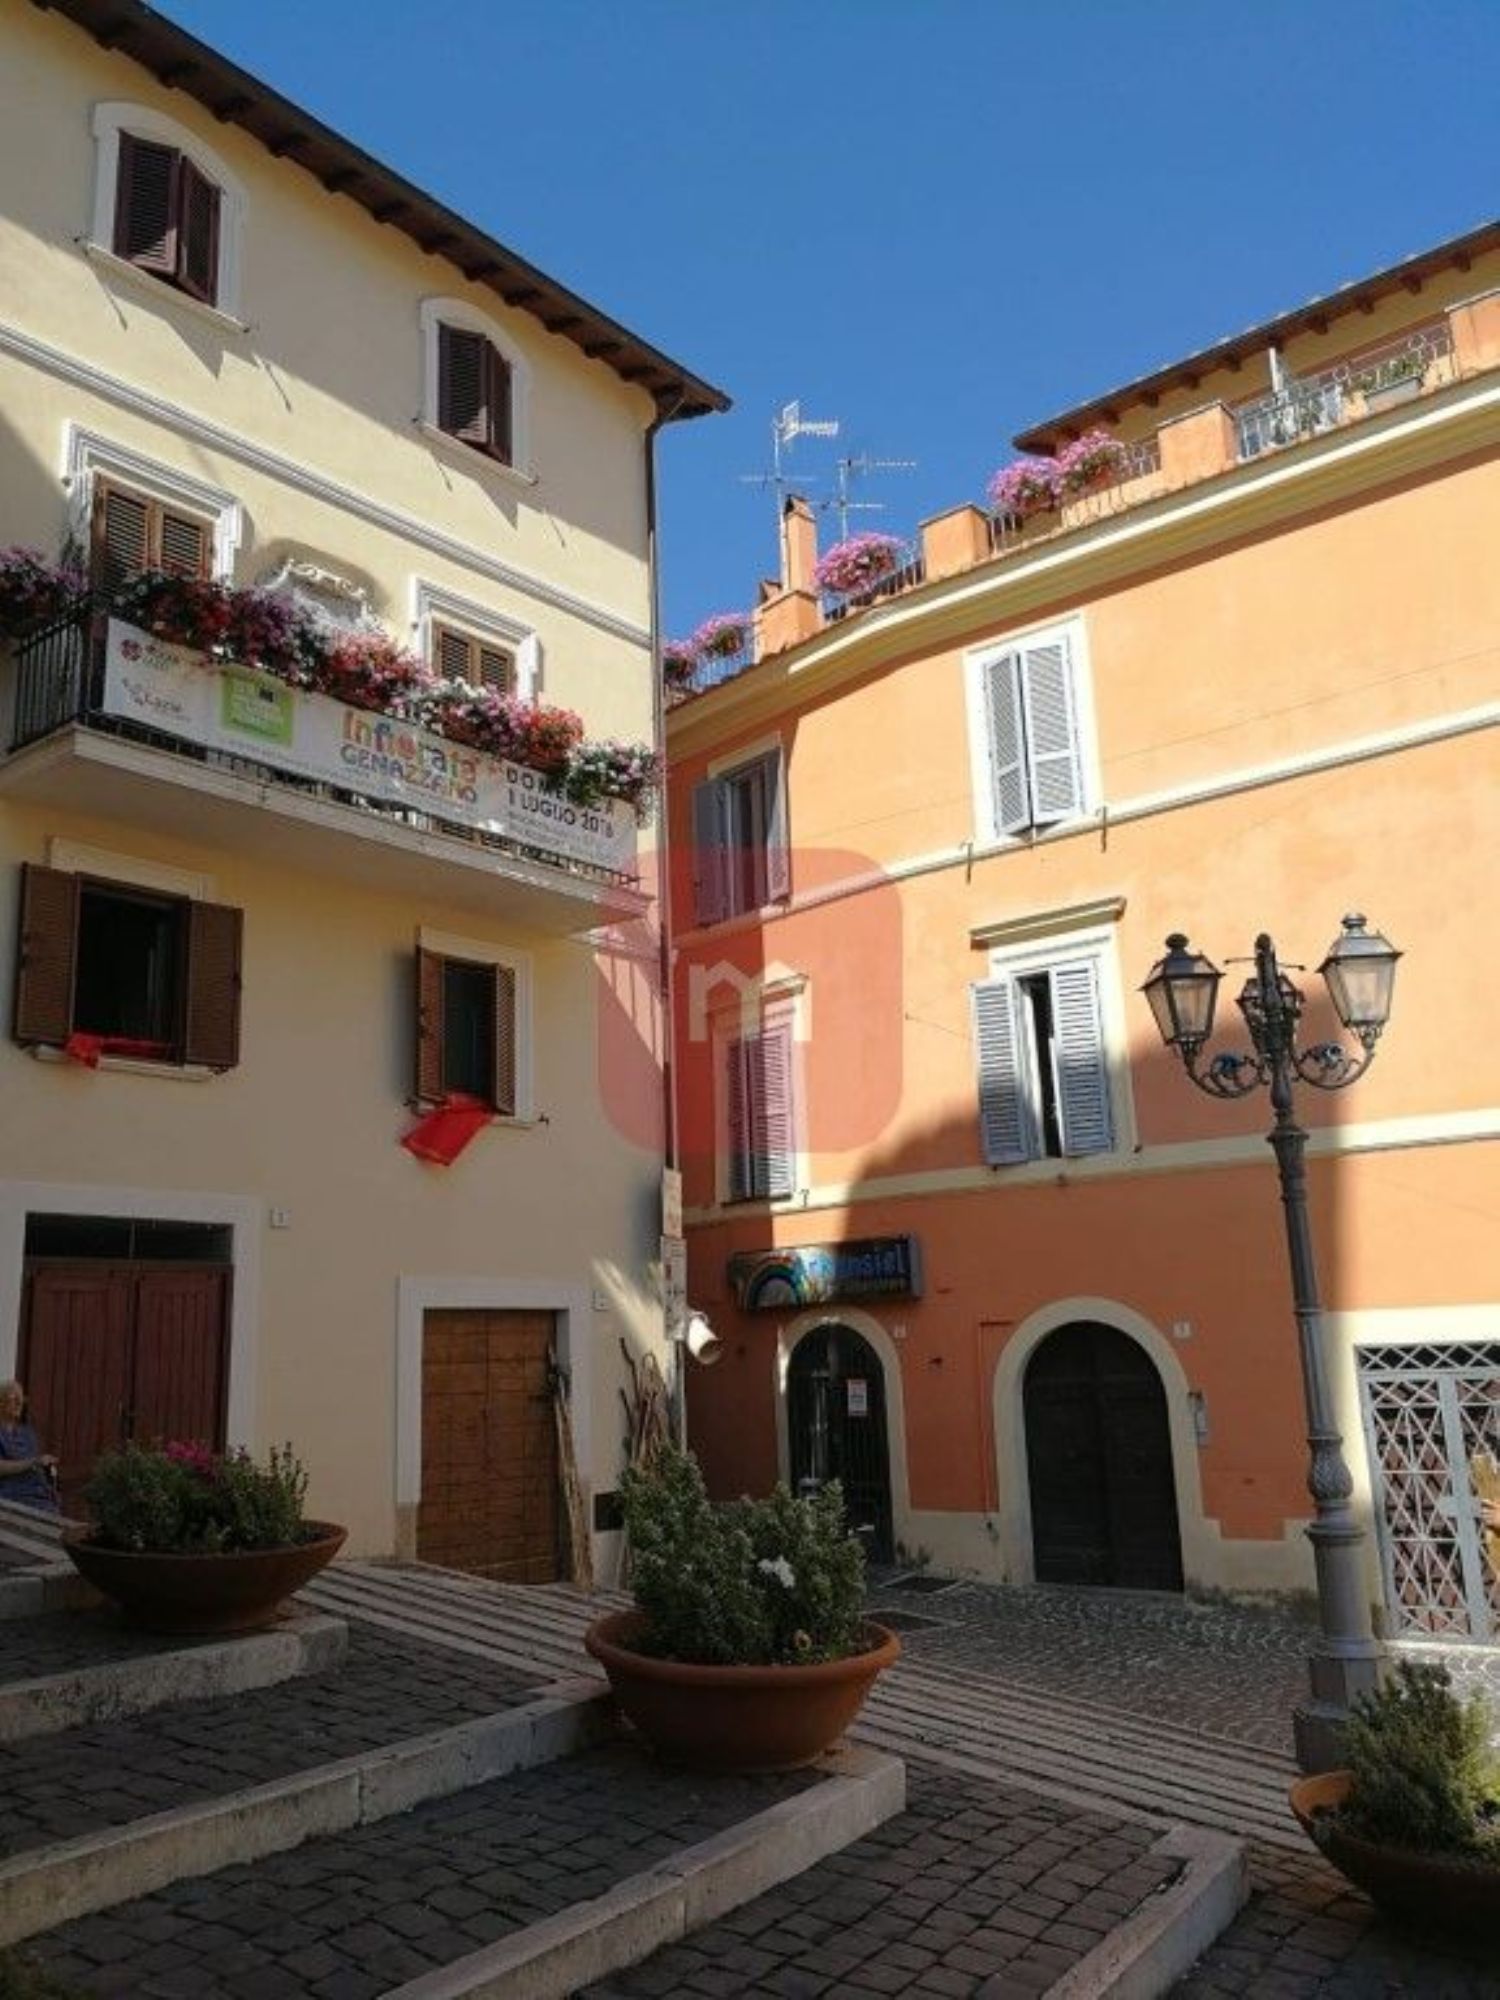 Appartamento in vendita a Genazzano, 2 locali, prezzo € 89.000 | CambioCasa.it